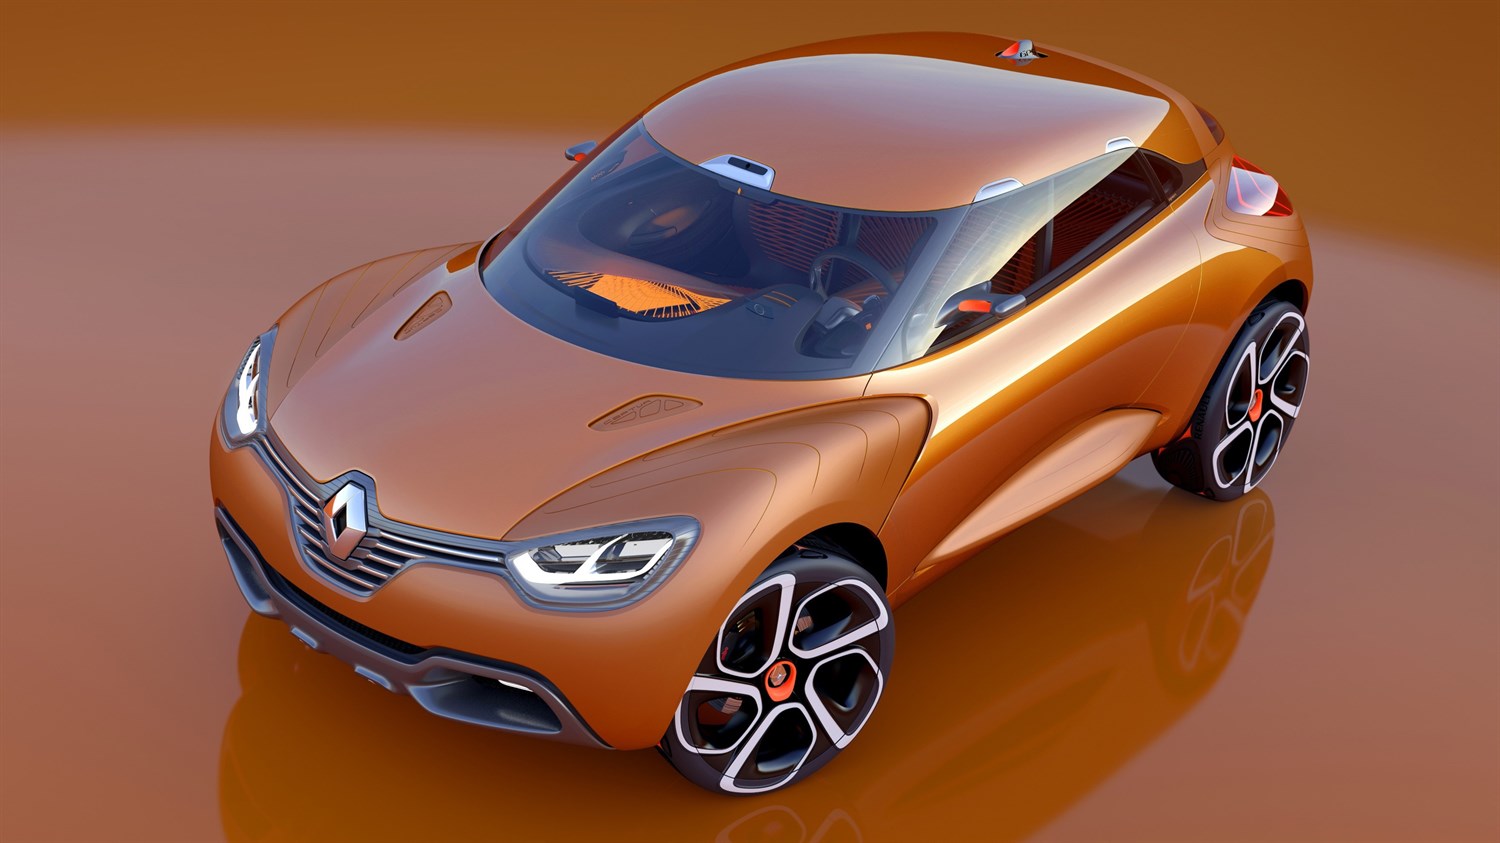 Renault CAPTUR concept car dynamic design exterior top view